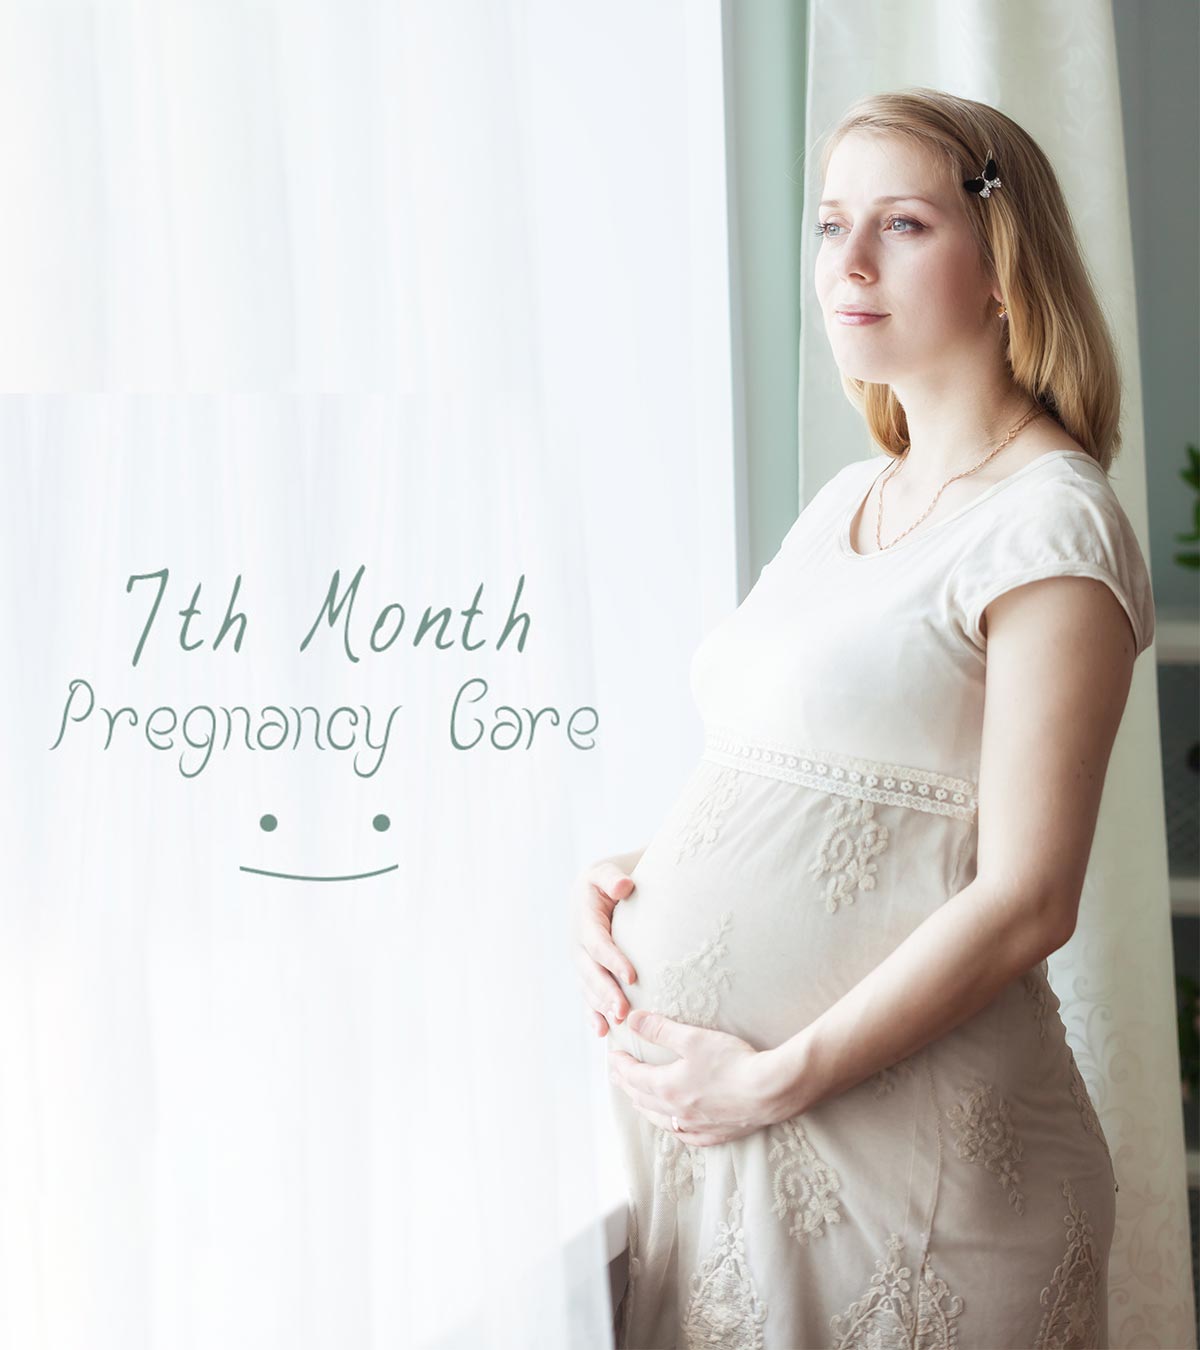 怀孕7个月:症状、身体变化和婴儿发育